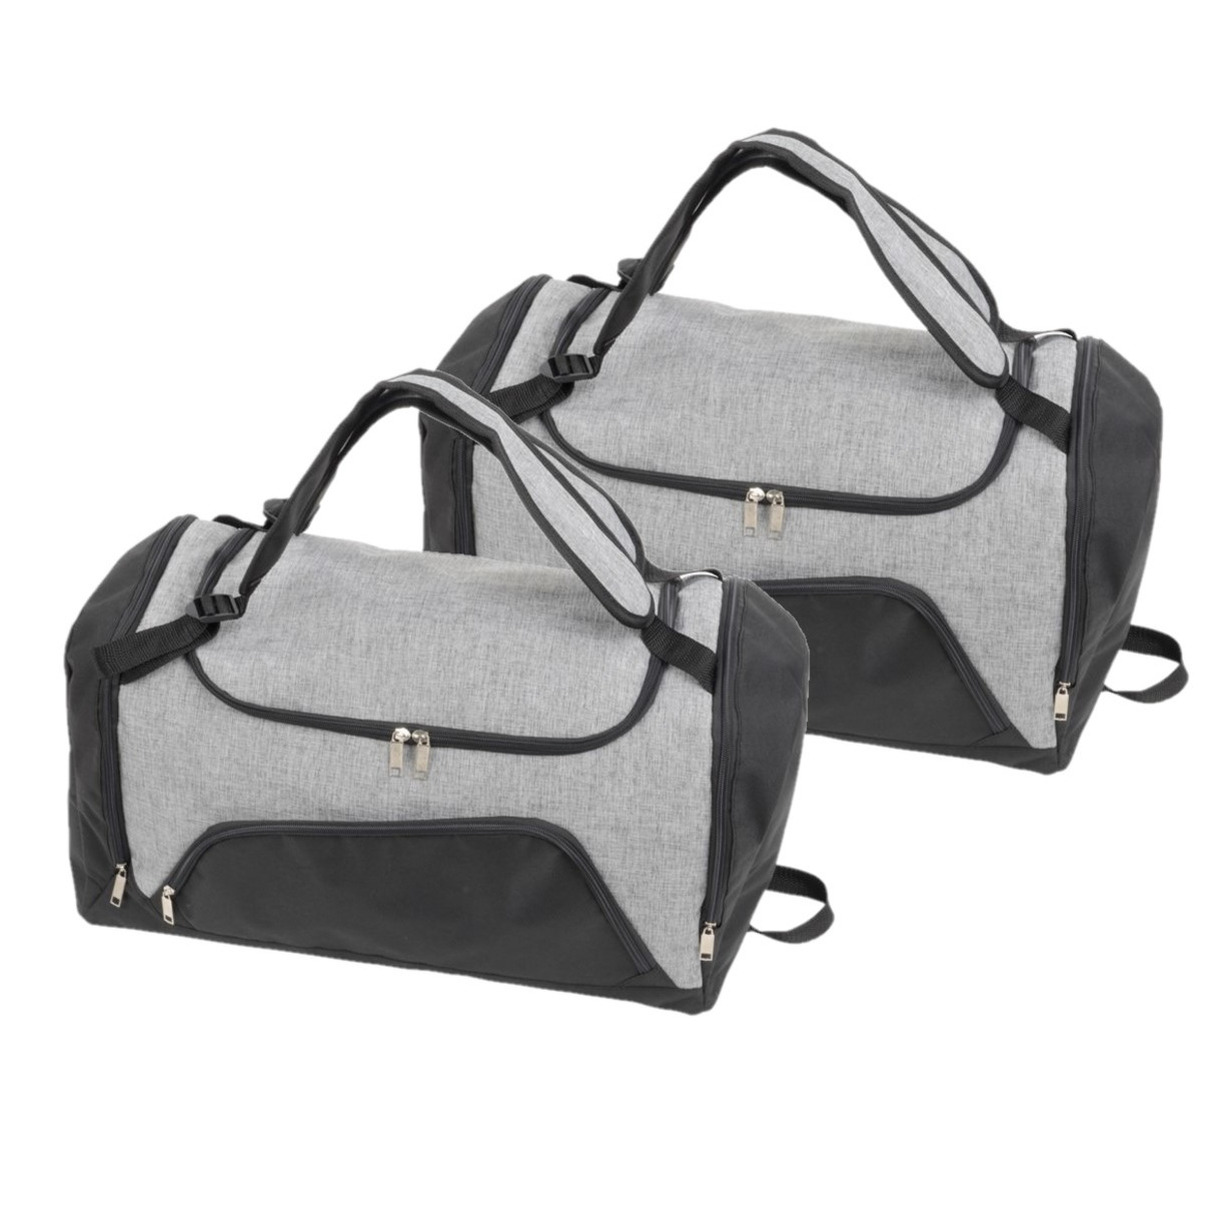 Set van 2x stuks grijs-zwarte sporttassen-weekendtassen rugtassen 55 cm